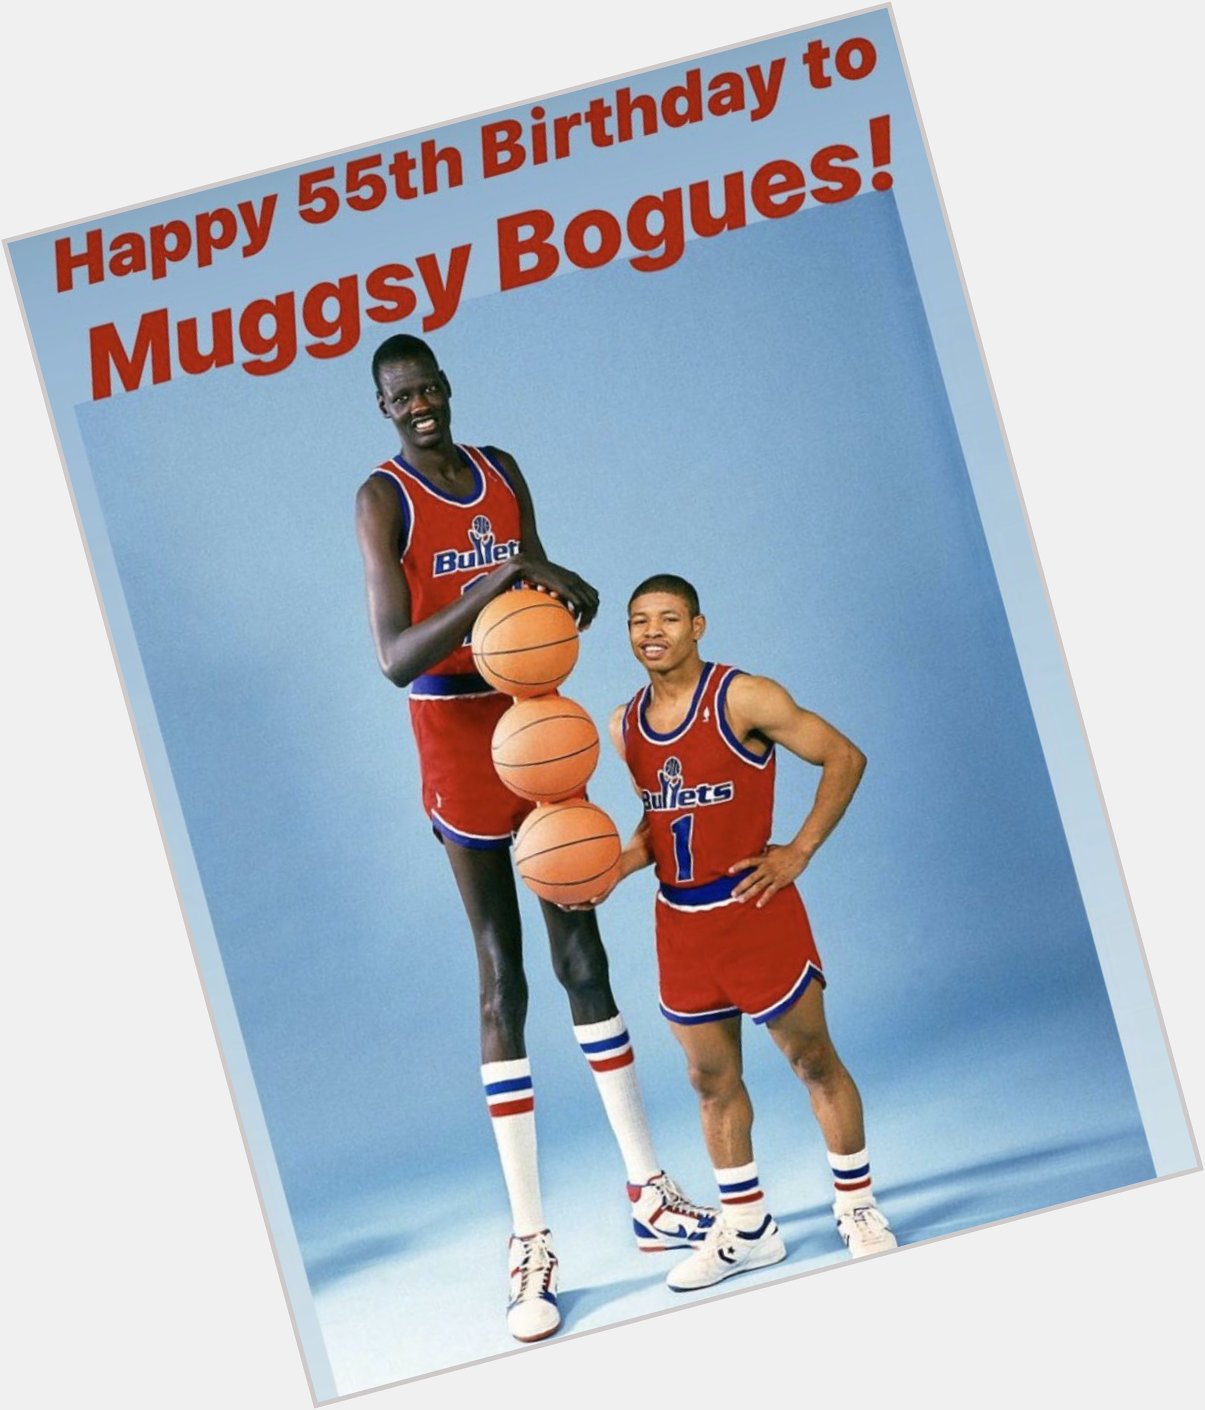 Happy bday Muggsy Bogues! 